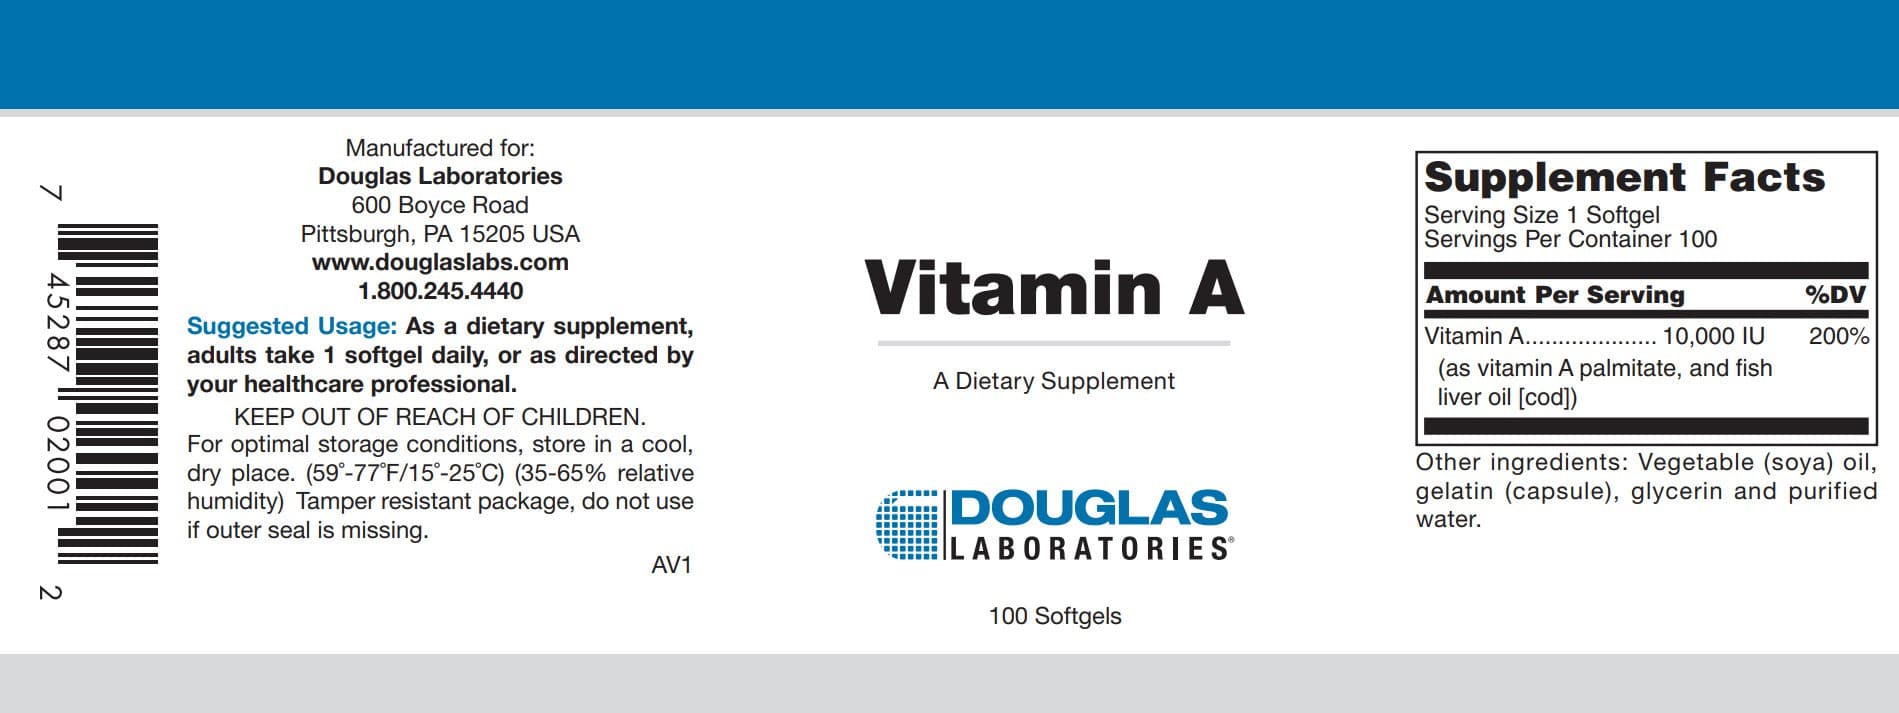 Douglas Laboratories Vitamin A